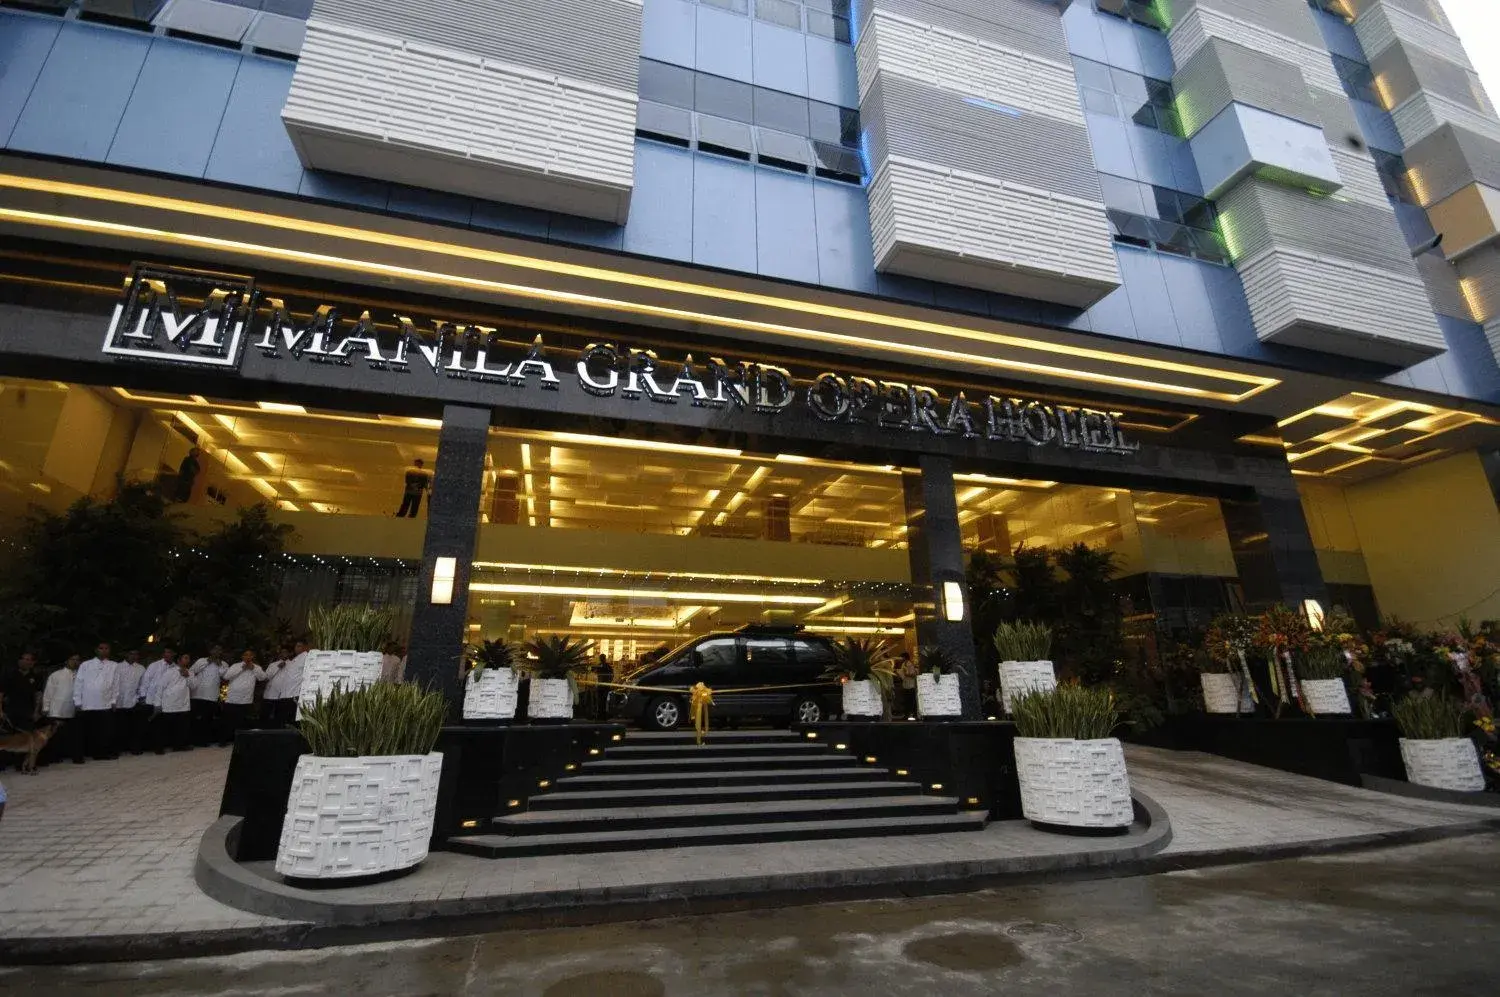 Facade/entrance in Manila Grand Opera Hotel